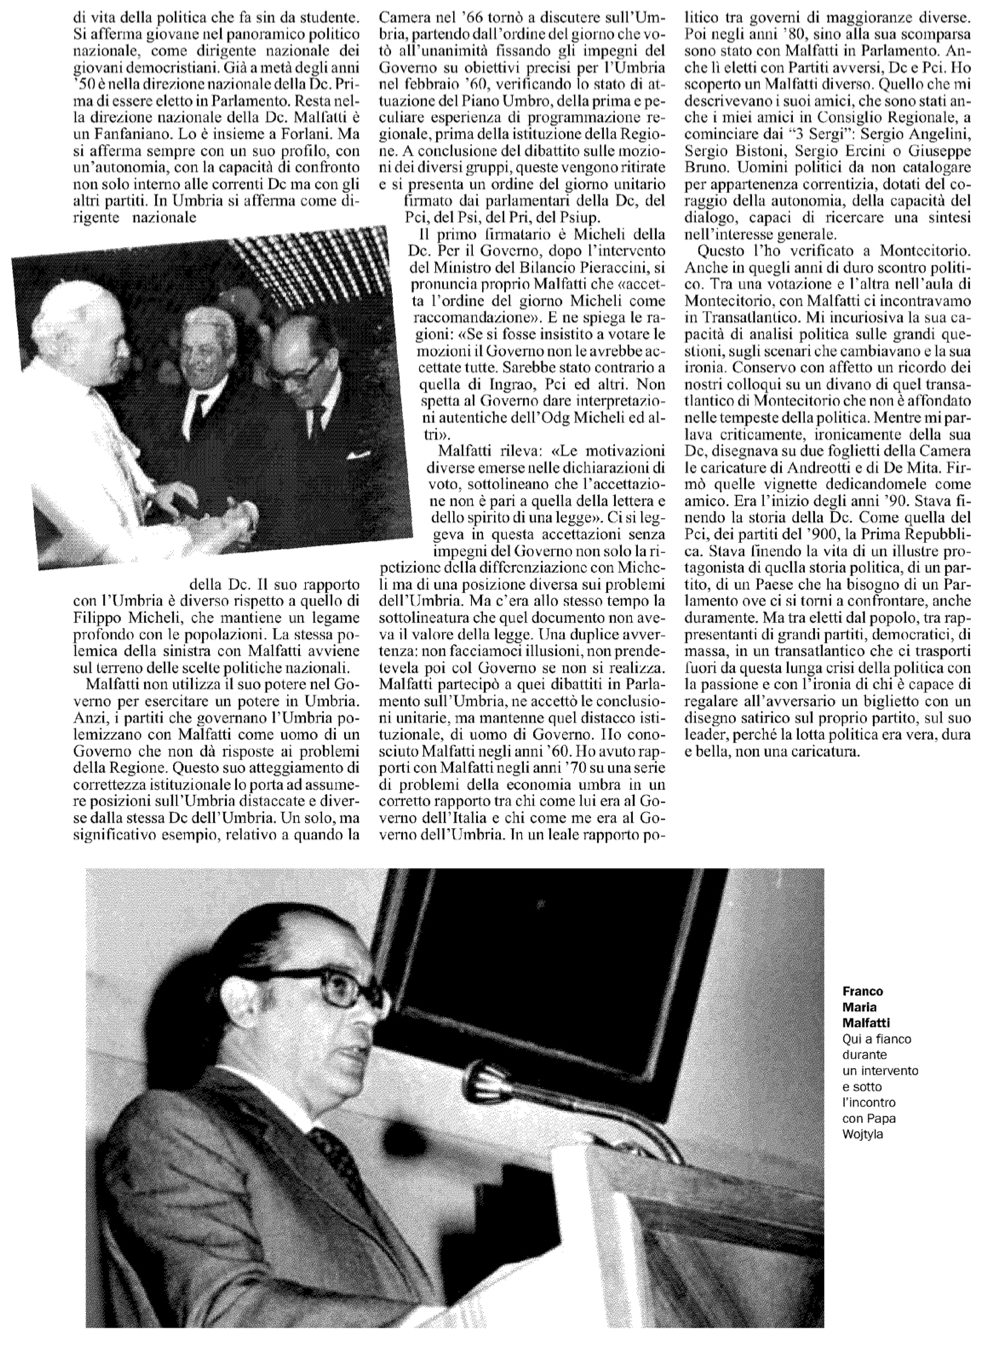 Malfatti Giornale dell'Umbria 21-01-2012_2